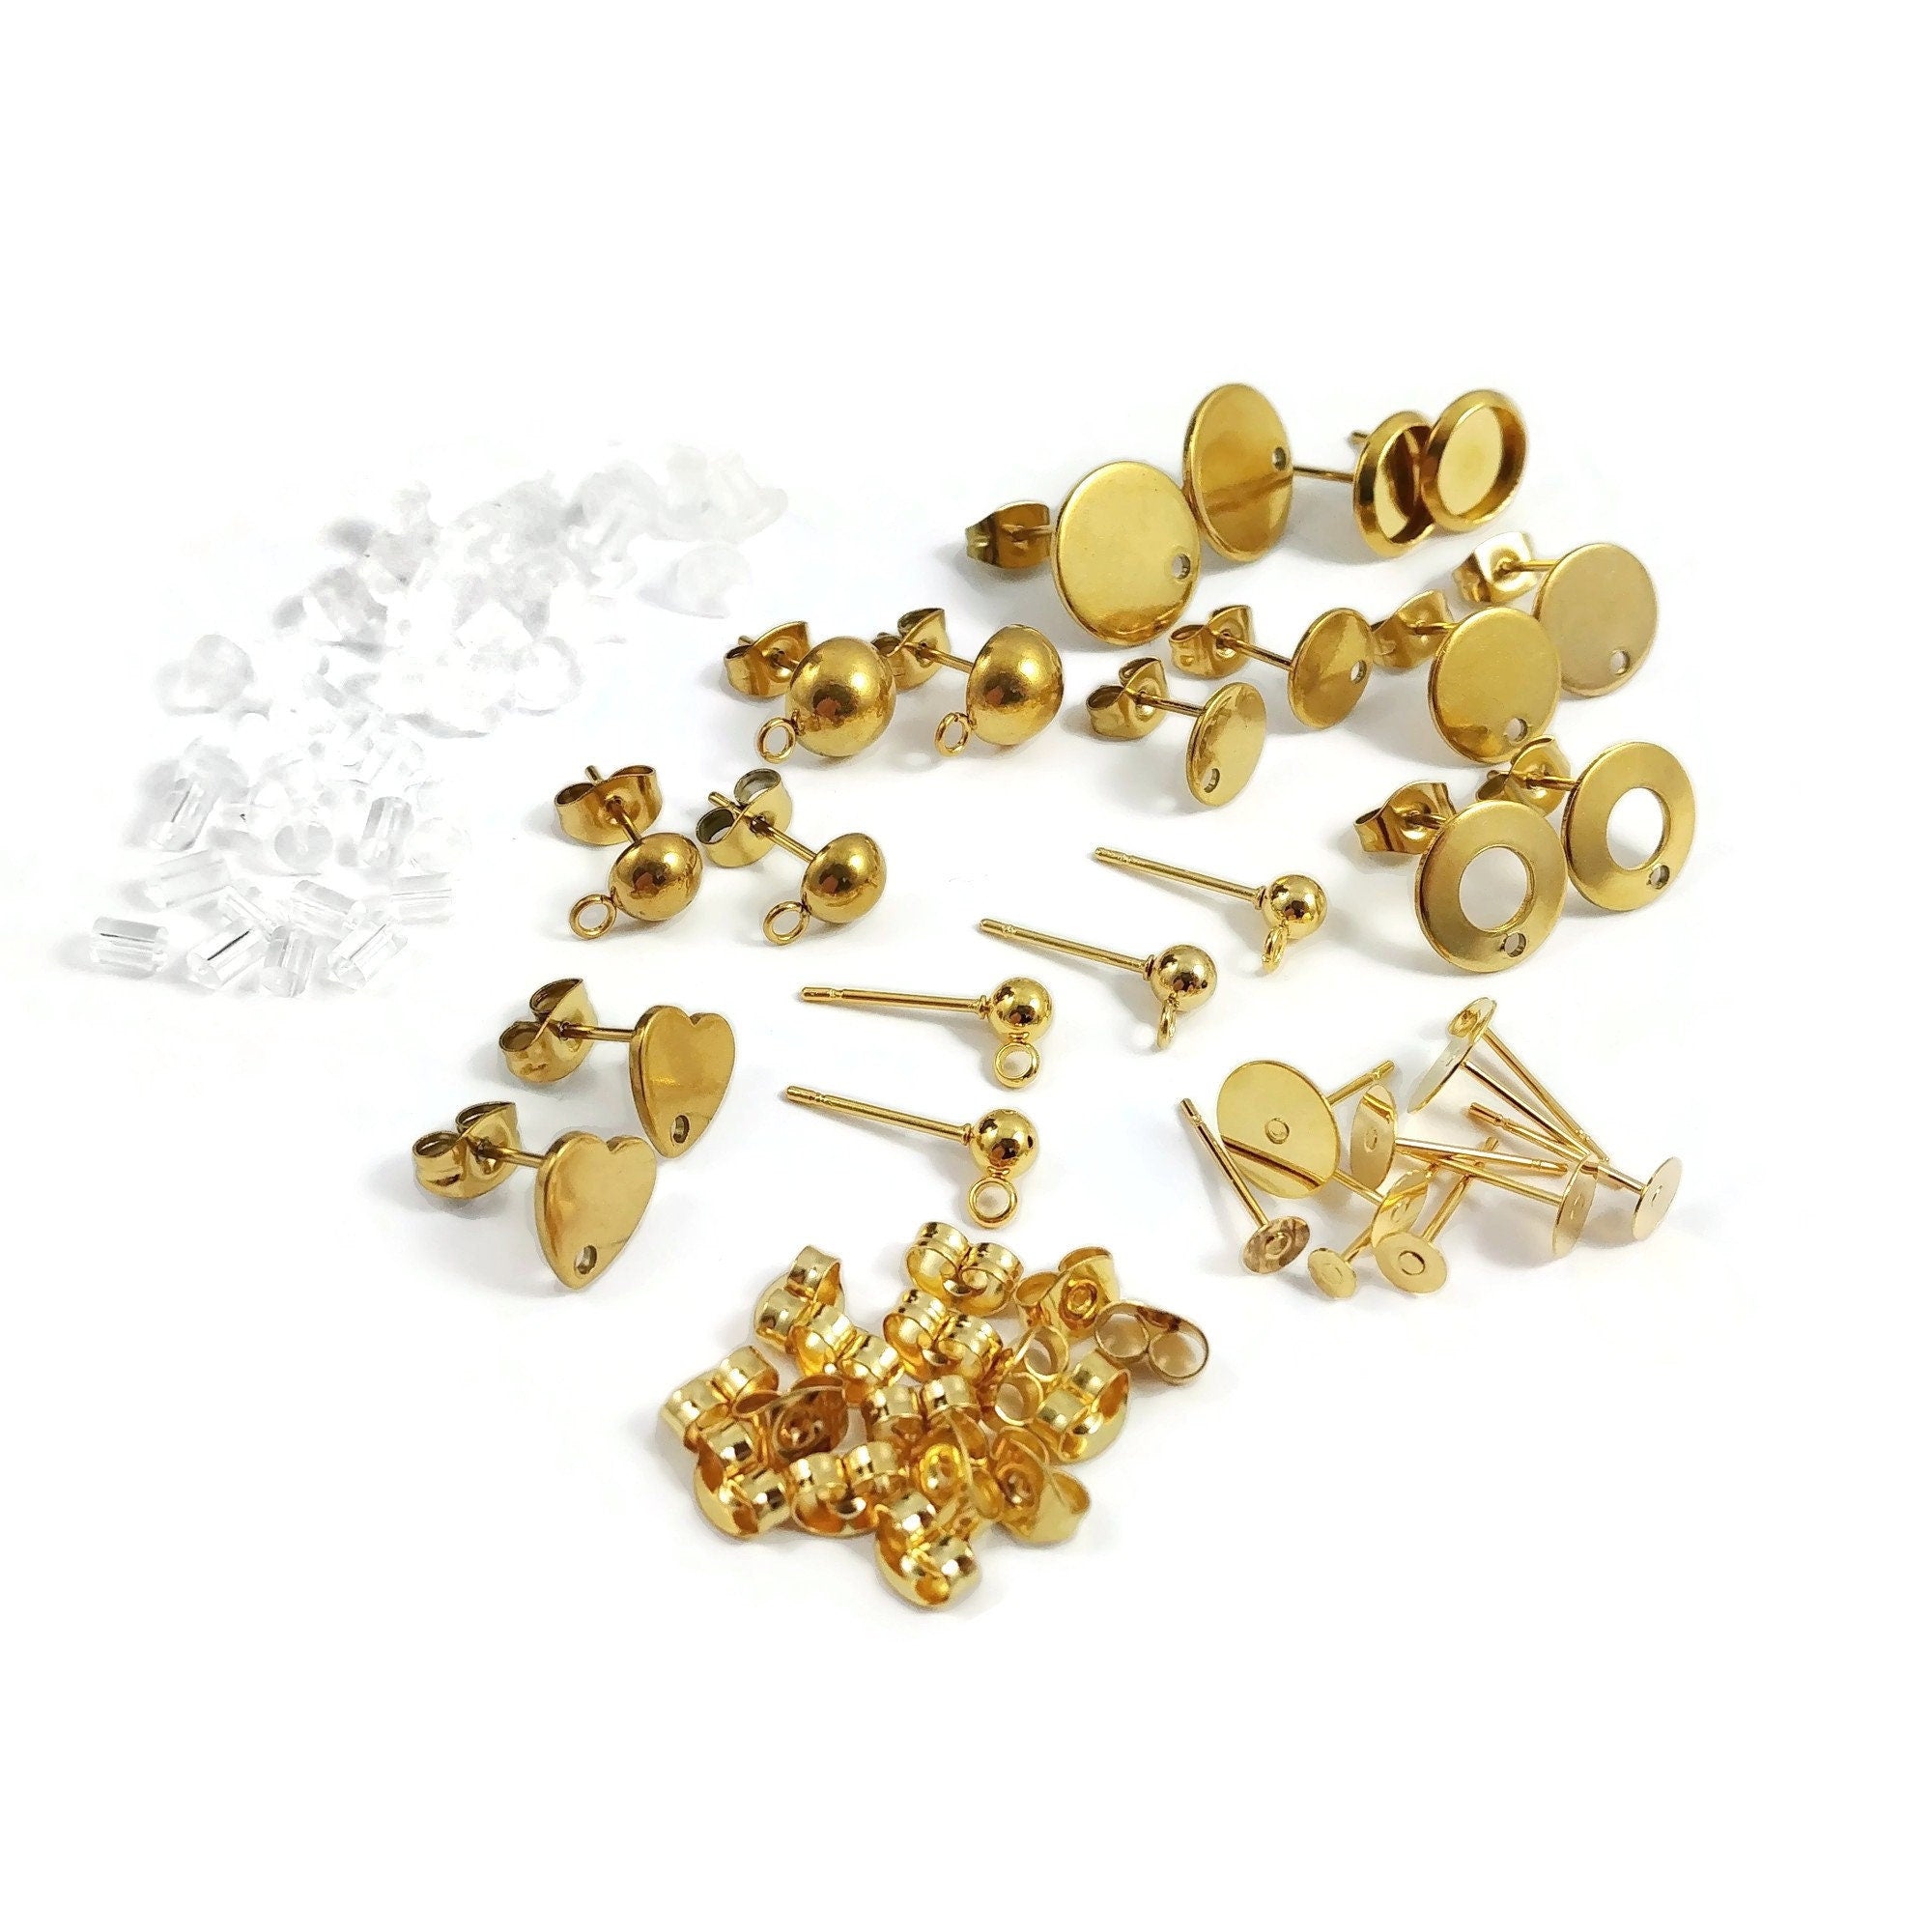 Earring making starter kit, Gold stainless steel posts, 50pcs sample p